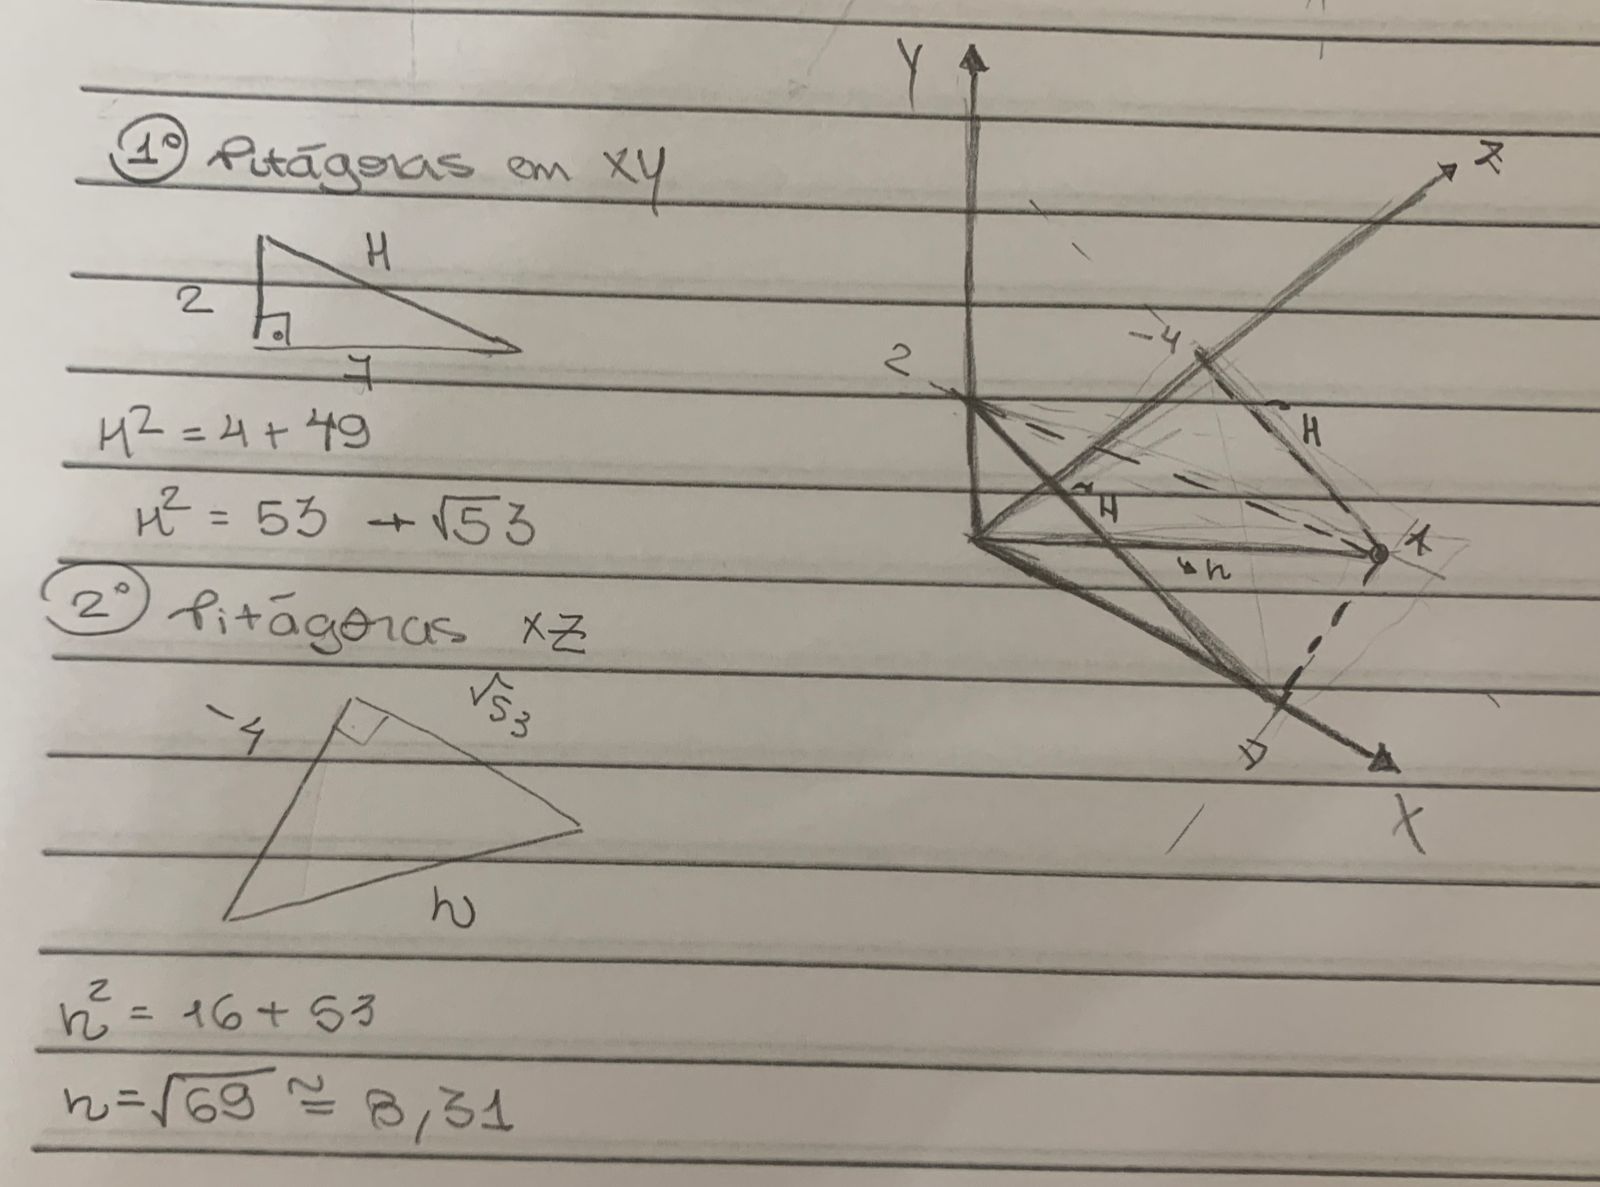 Colocando o ponto A(7,2-4) e a origem (0,0) no plano cartesiano, tem-se dois triângulos pitagóricos e, com pitágoras,a distân